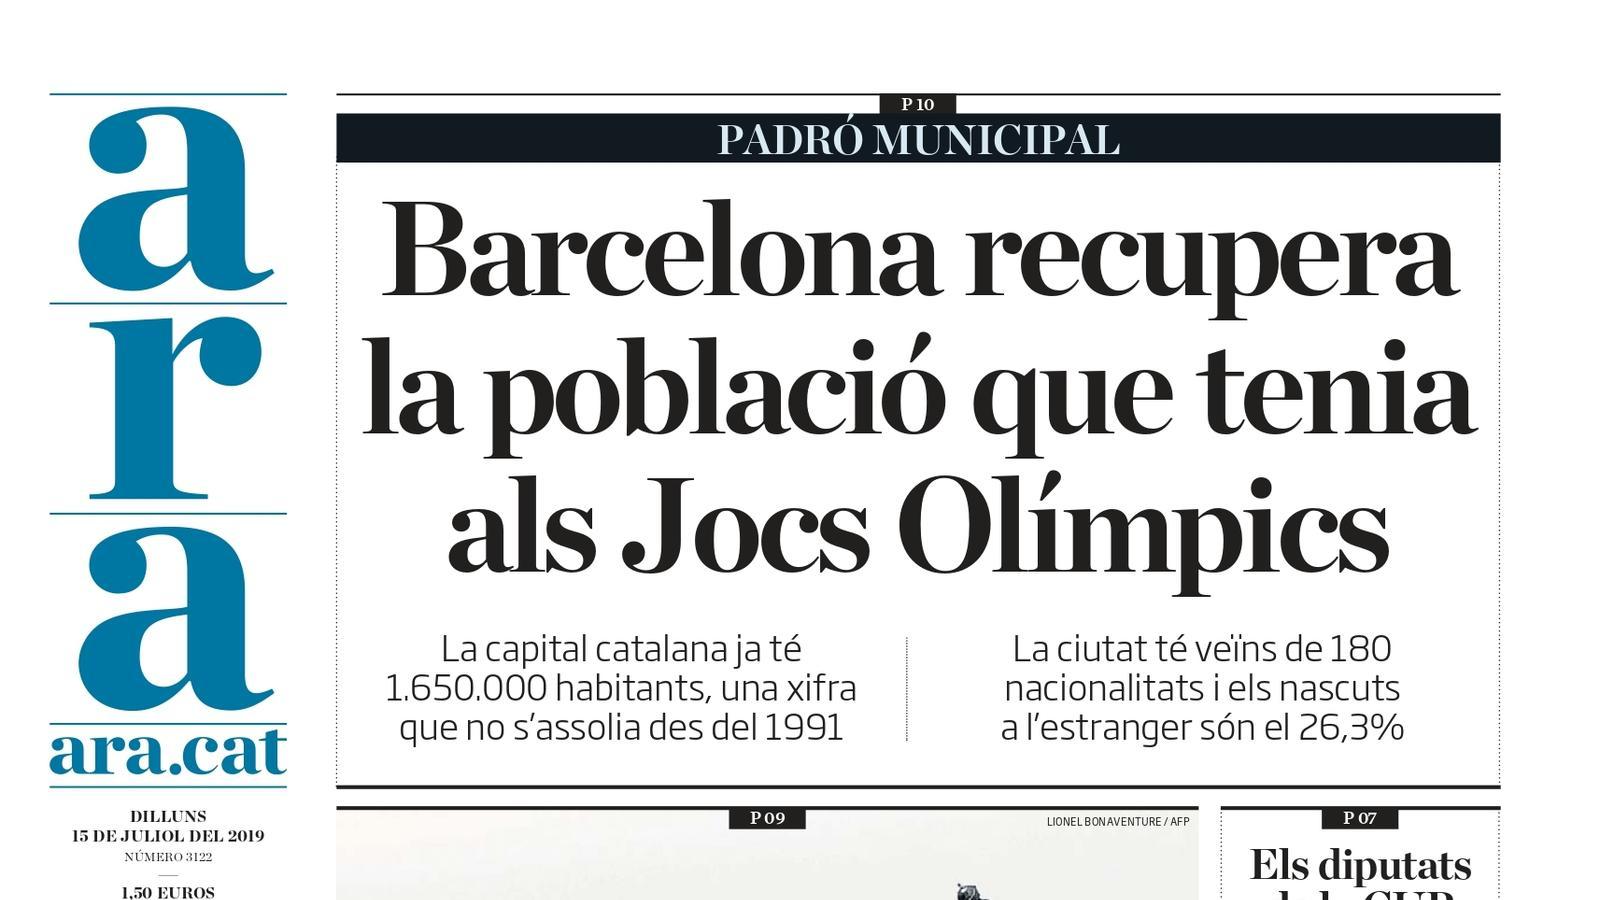 "Barcelona recupera la població que tenia als Jocs Olímpics", la portada de l'ARA